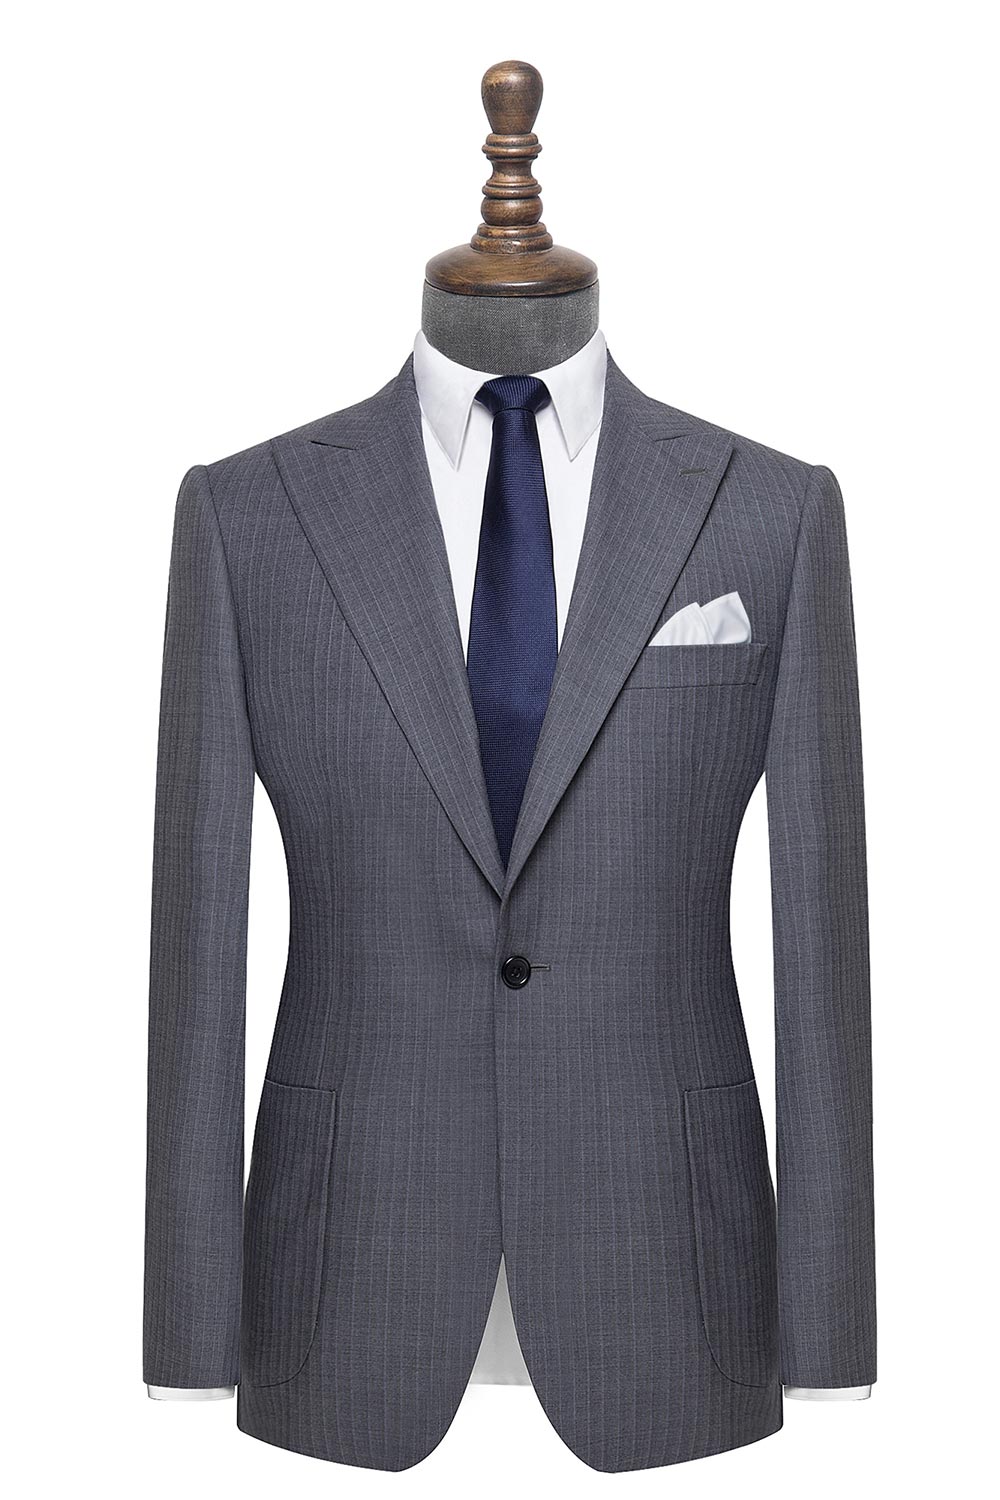 The Chesterfield Herringbone Pinstripe Formal Suit - Men's Custom Suit ...